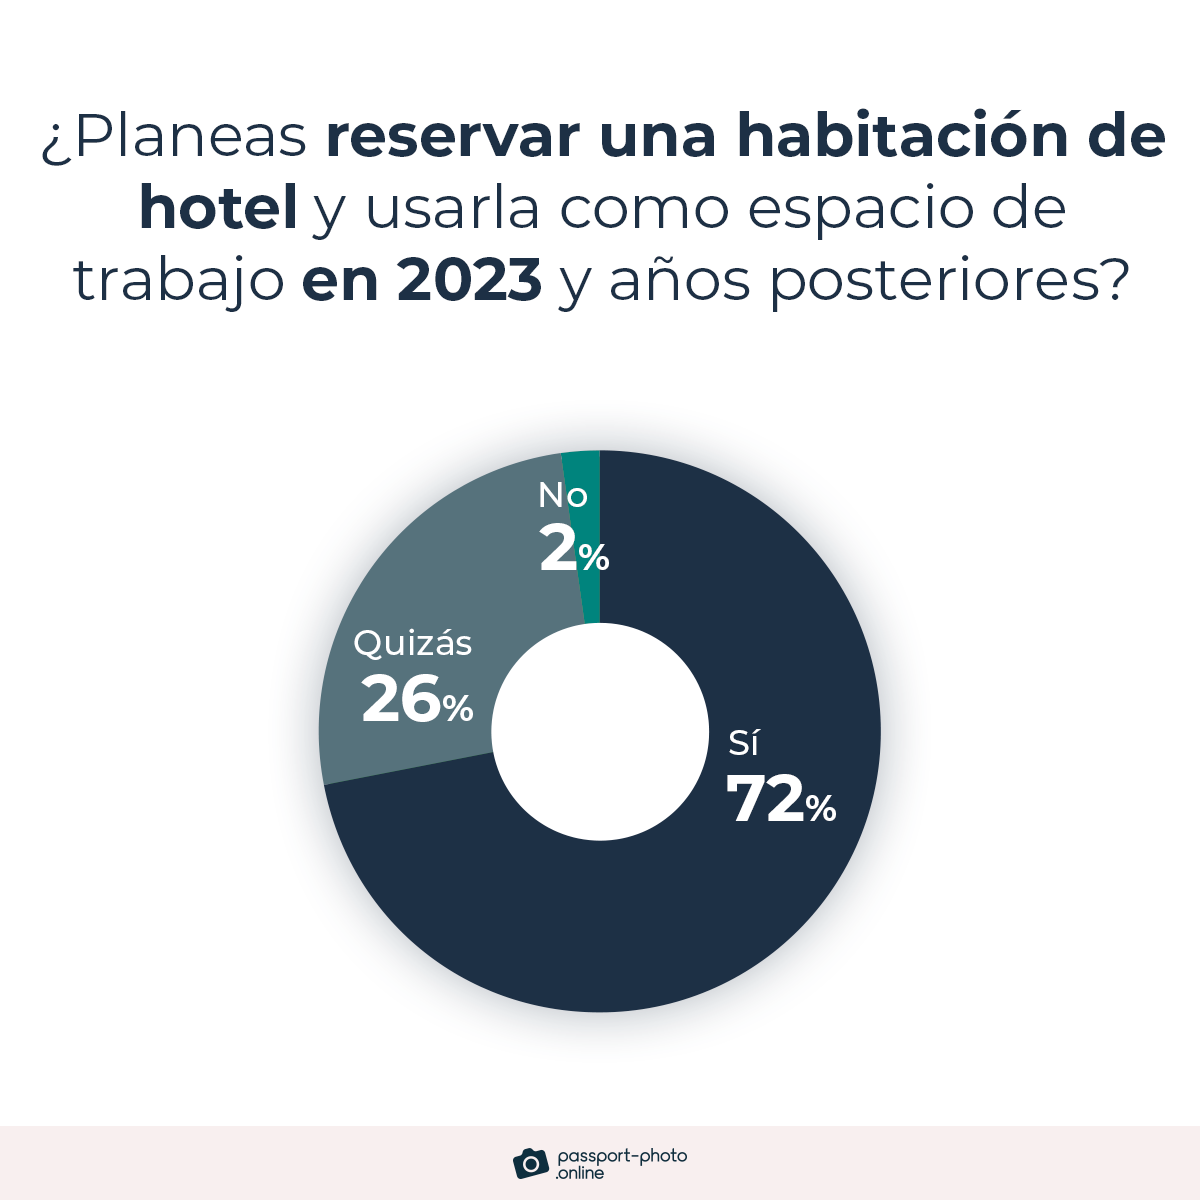 El 72% de los trabajadores planean reservar habitaciones de hotel con la intención de usarlas como su espacio de trabajo en 2023 y en adelante